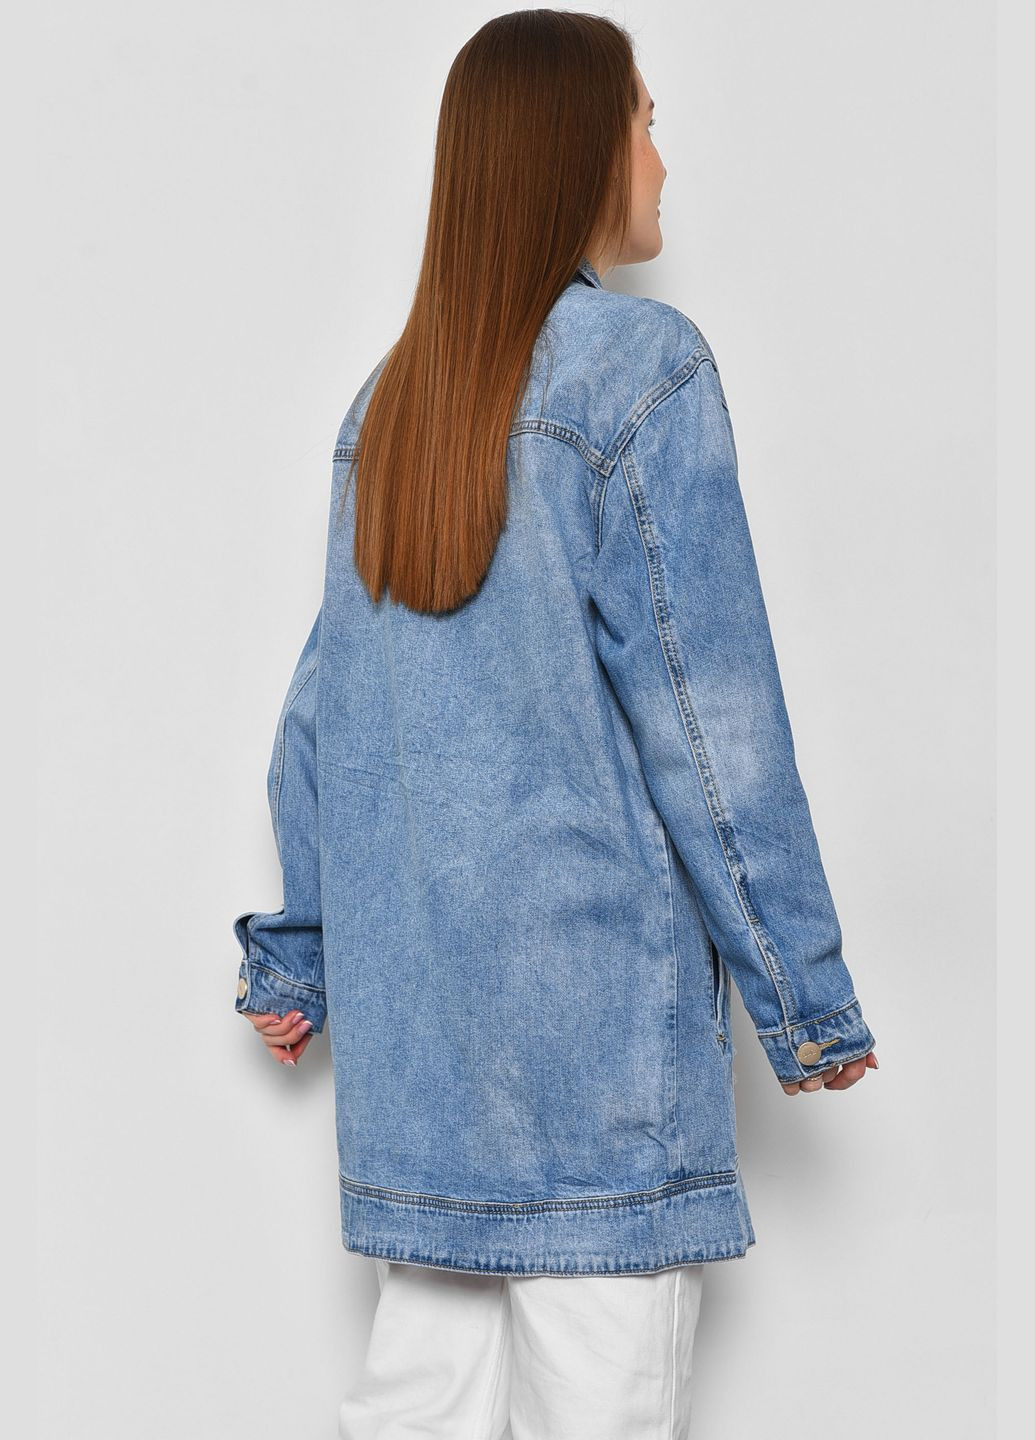 Голубой женский джинсовка женская удлиненная голубого цвета Let's Shop с орнаментом - демисезонный